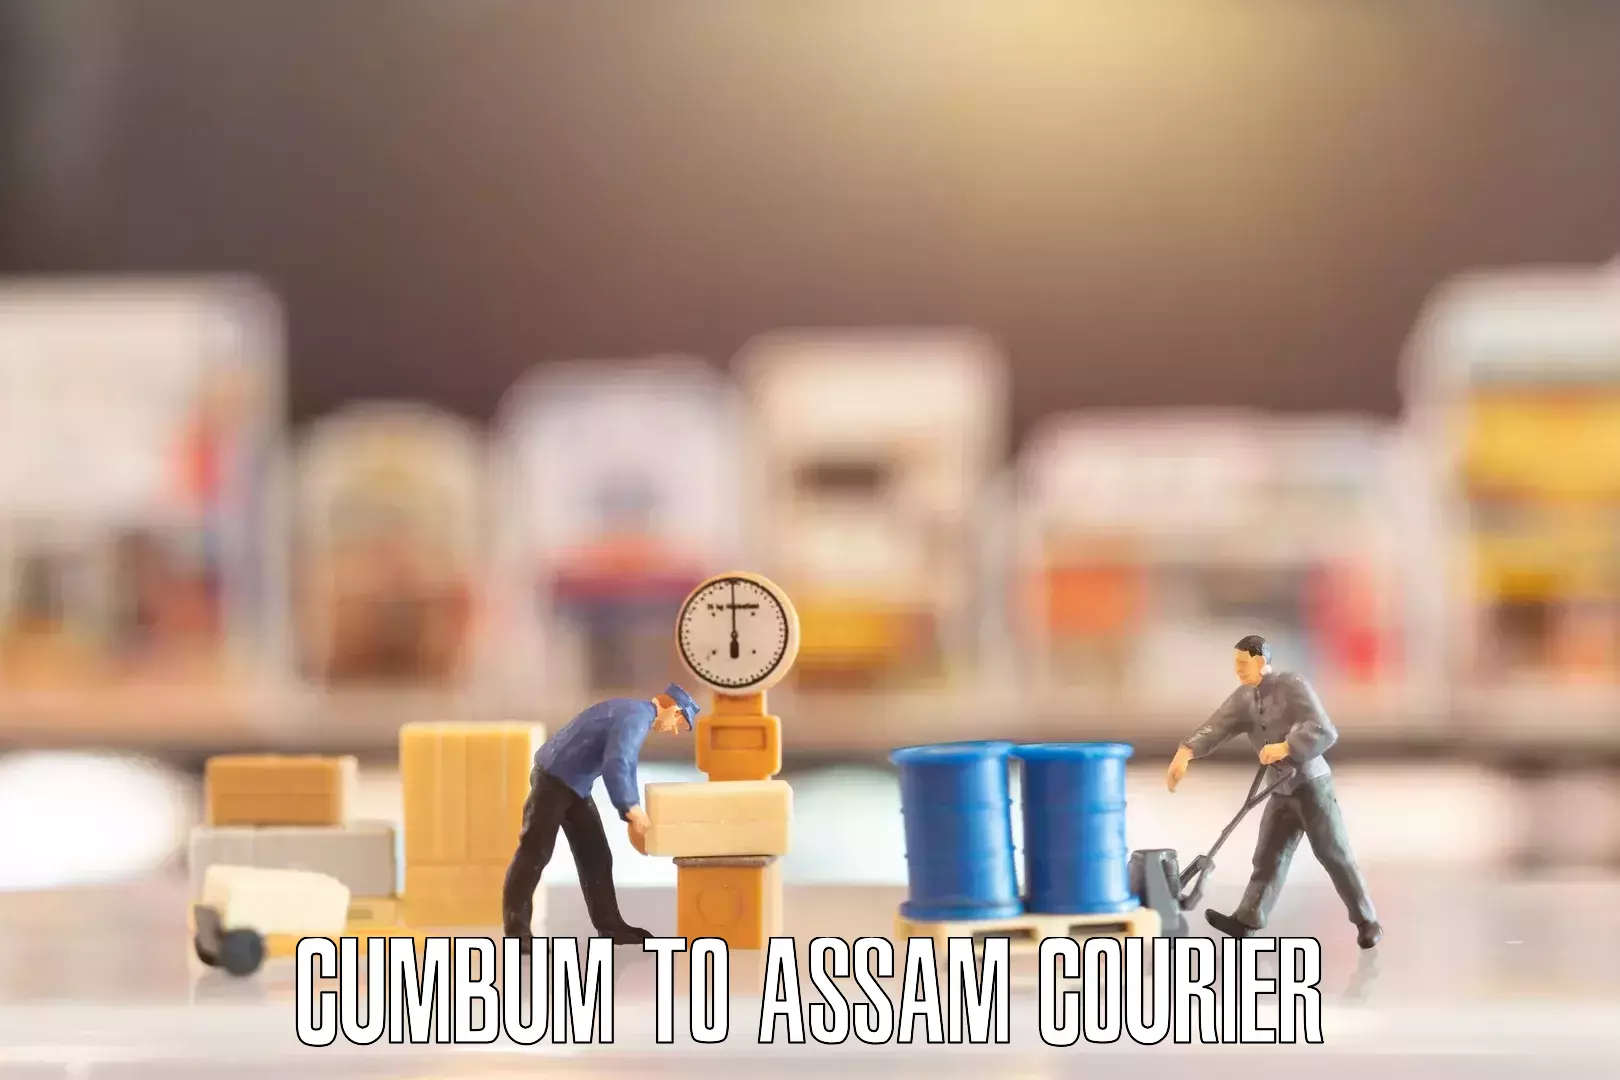 Trusted furniture movers Cumbum to Assam